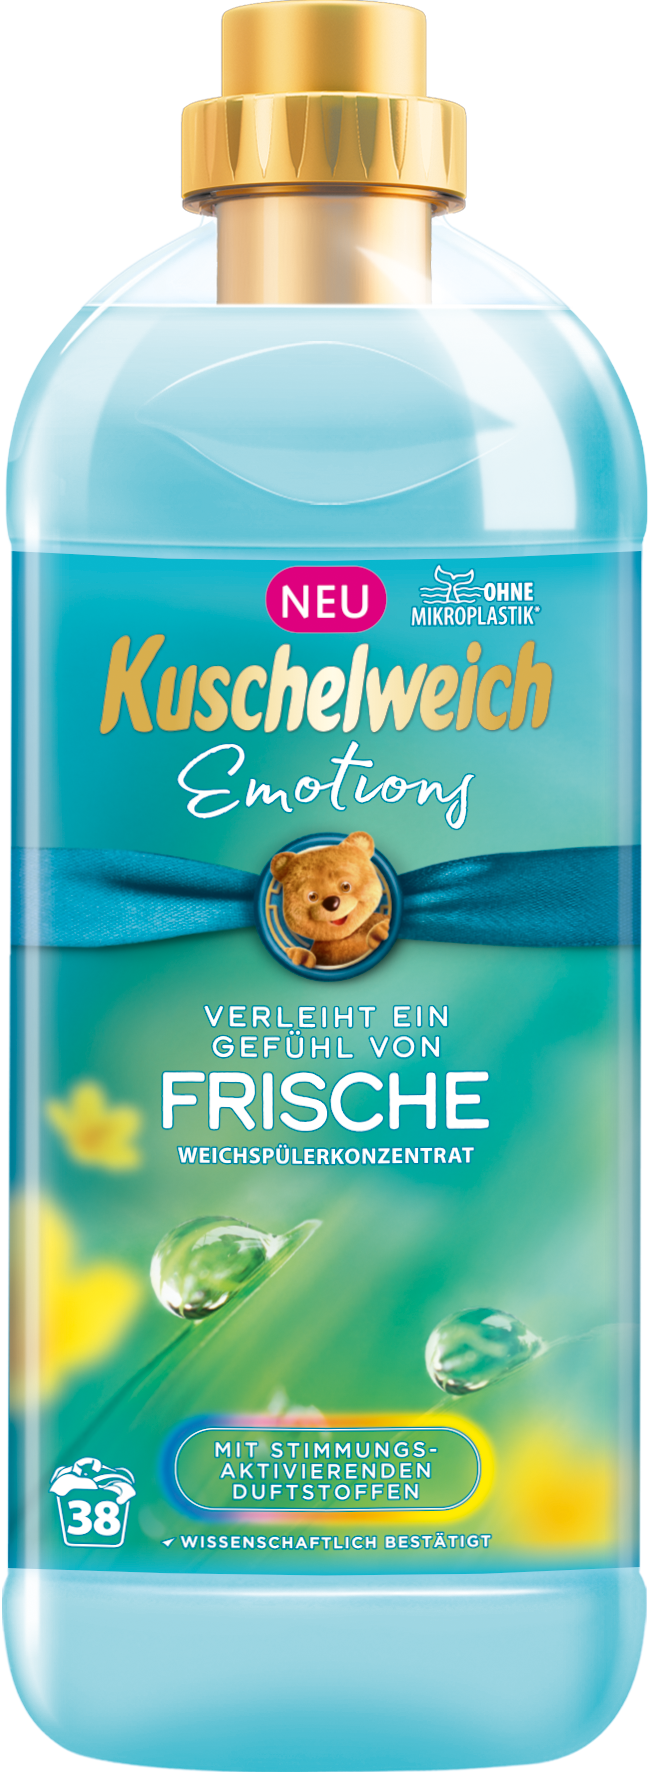 Kuschelweich aviváž - Emotions modrý, 38 praní